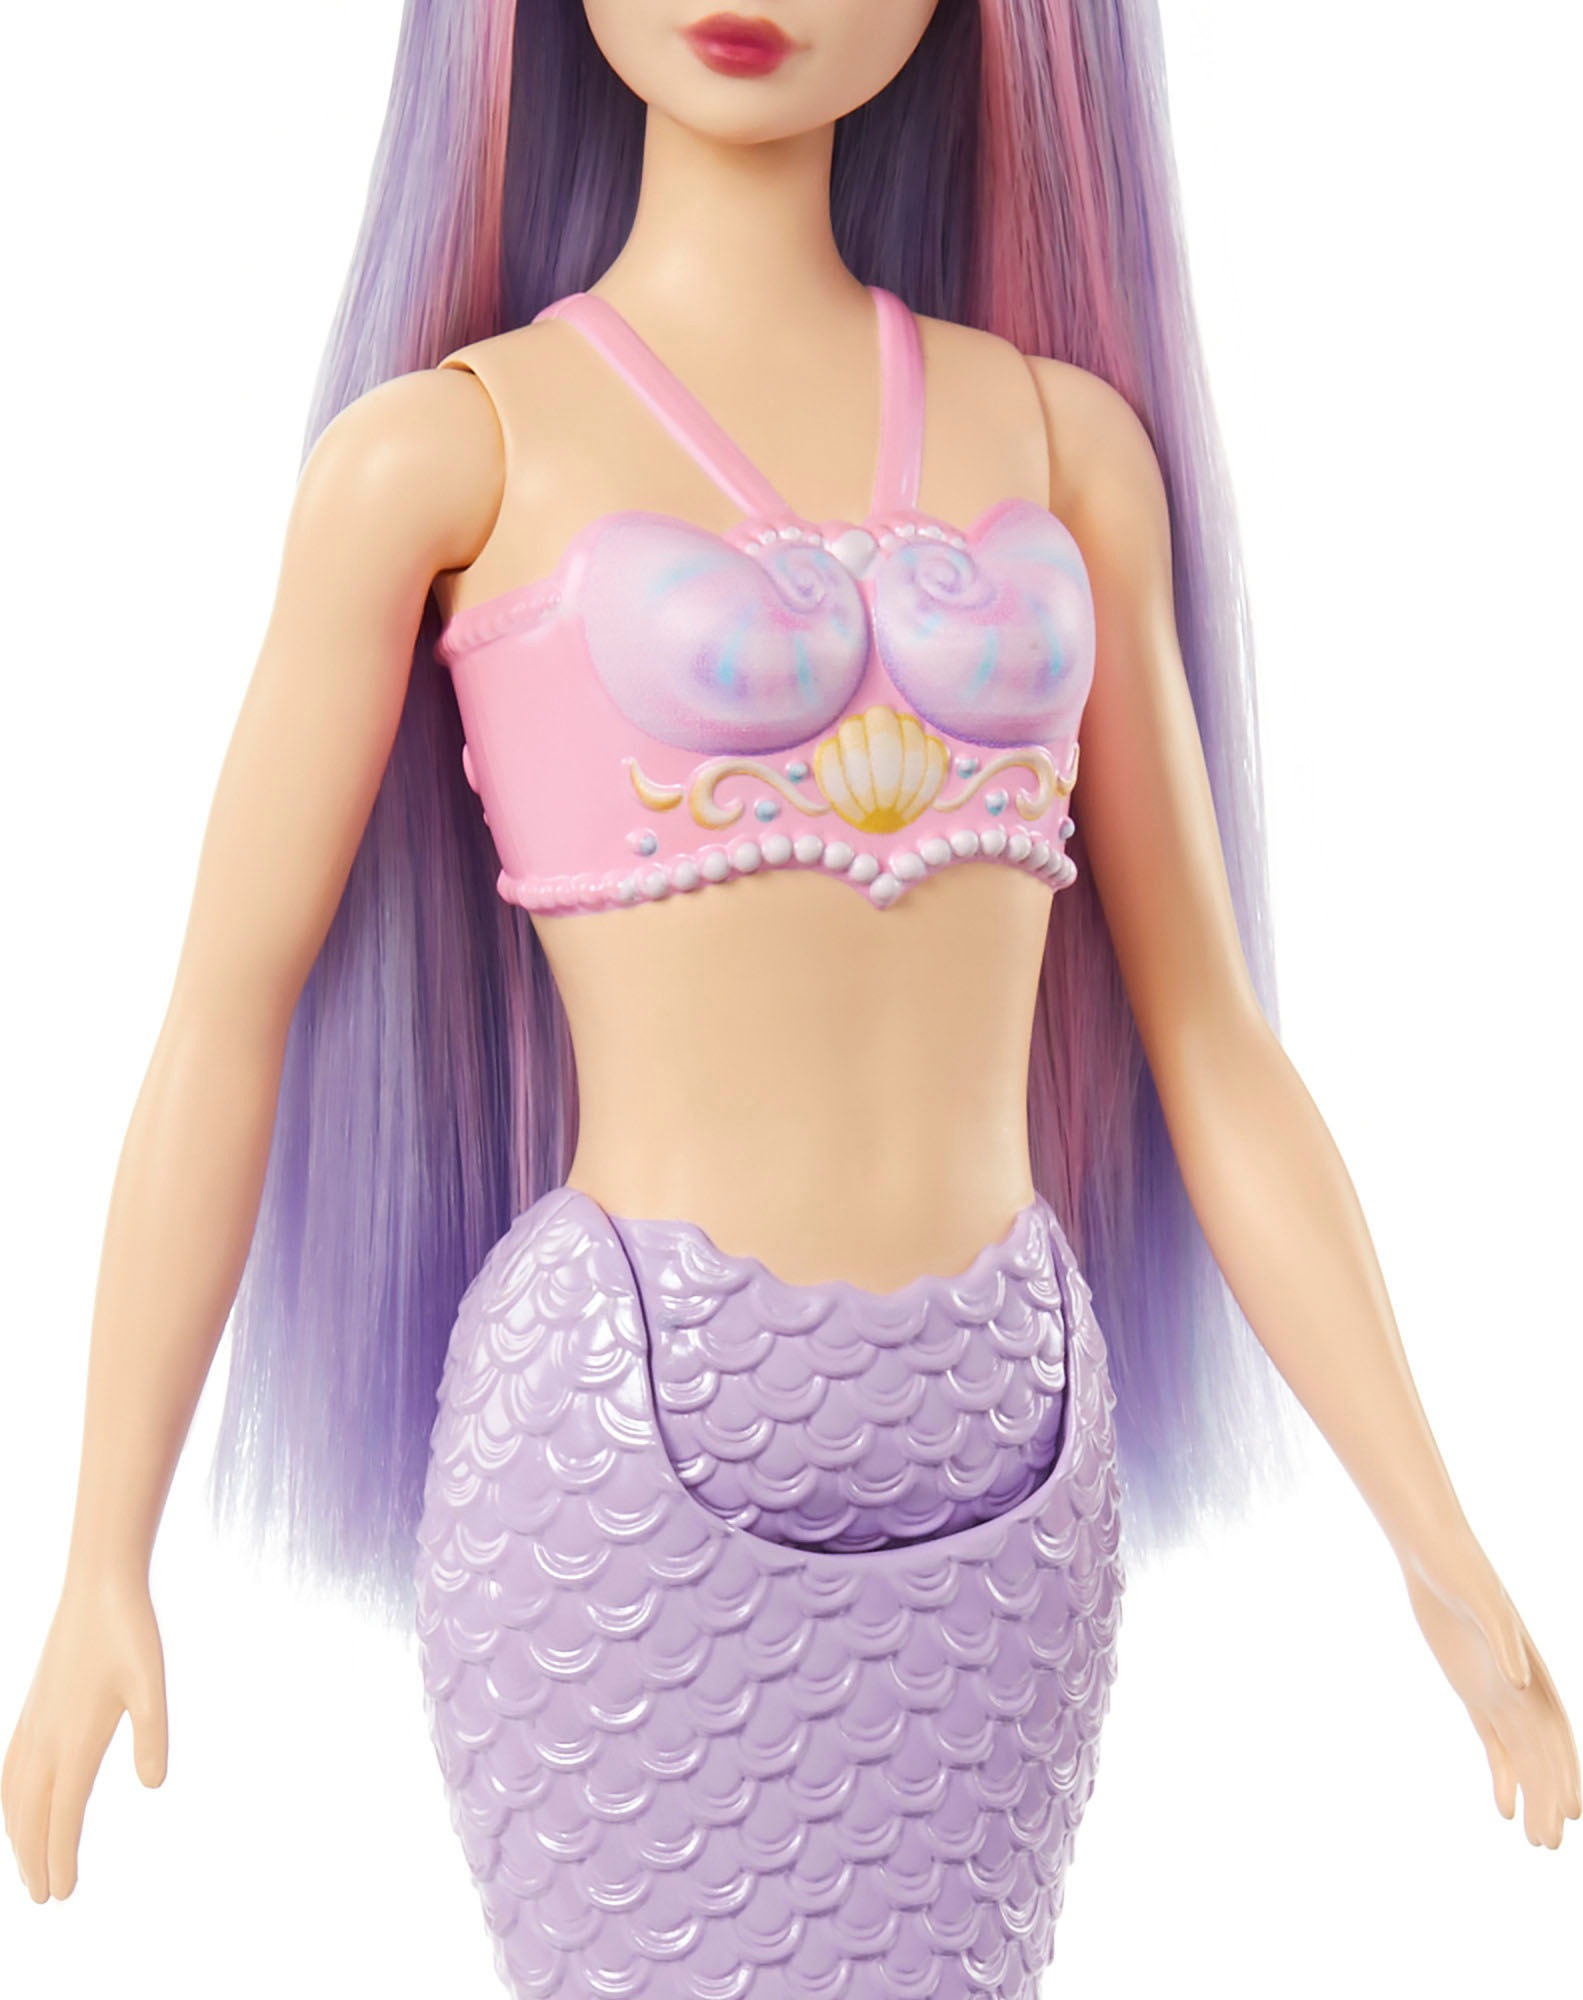 Barbie Meerjungfrauenpuppe »Meerjungfrau«, mit lilafarbenem Haar